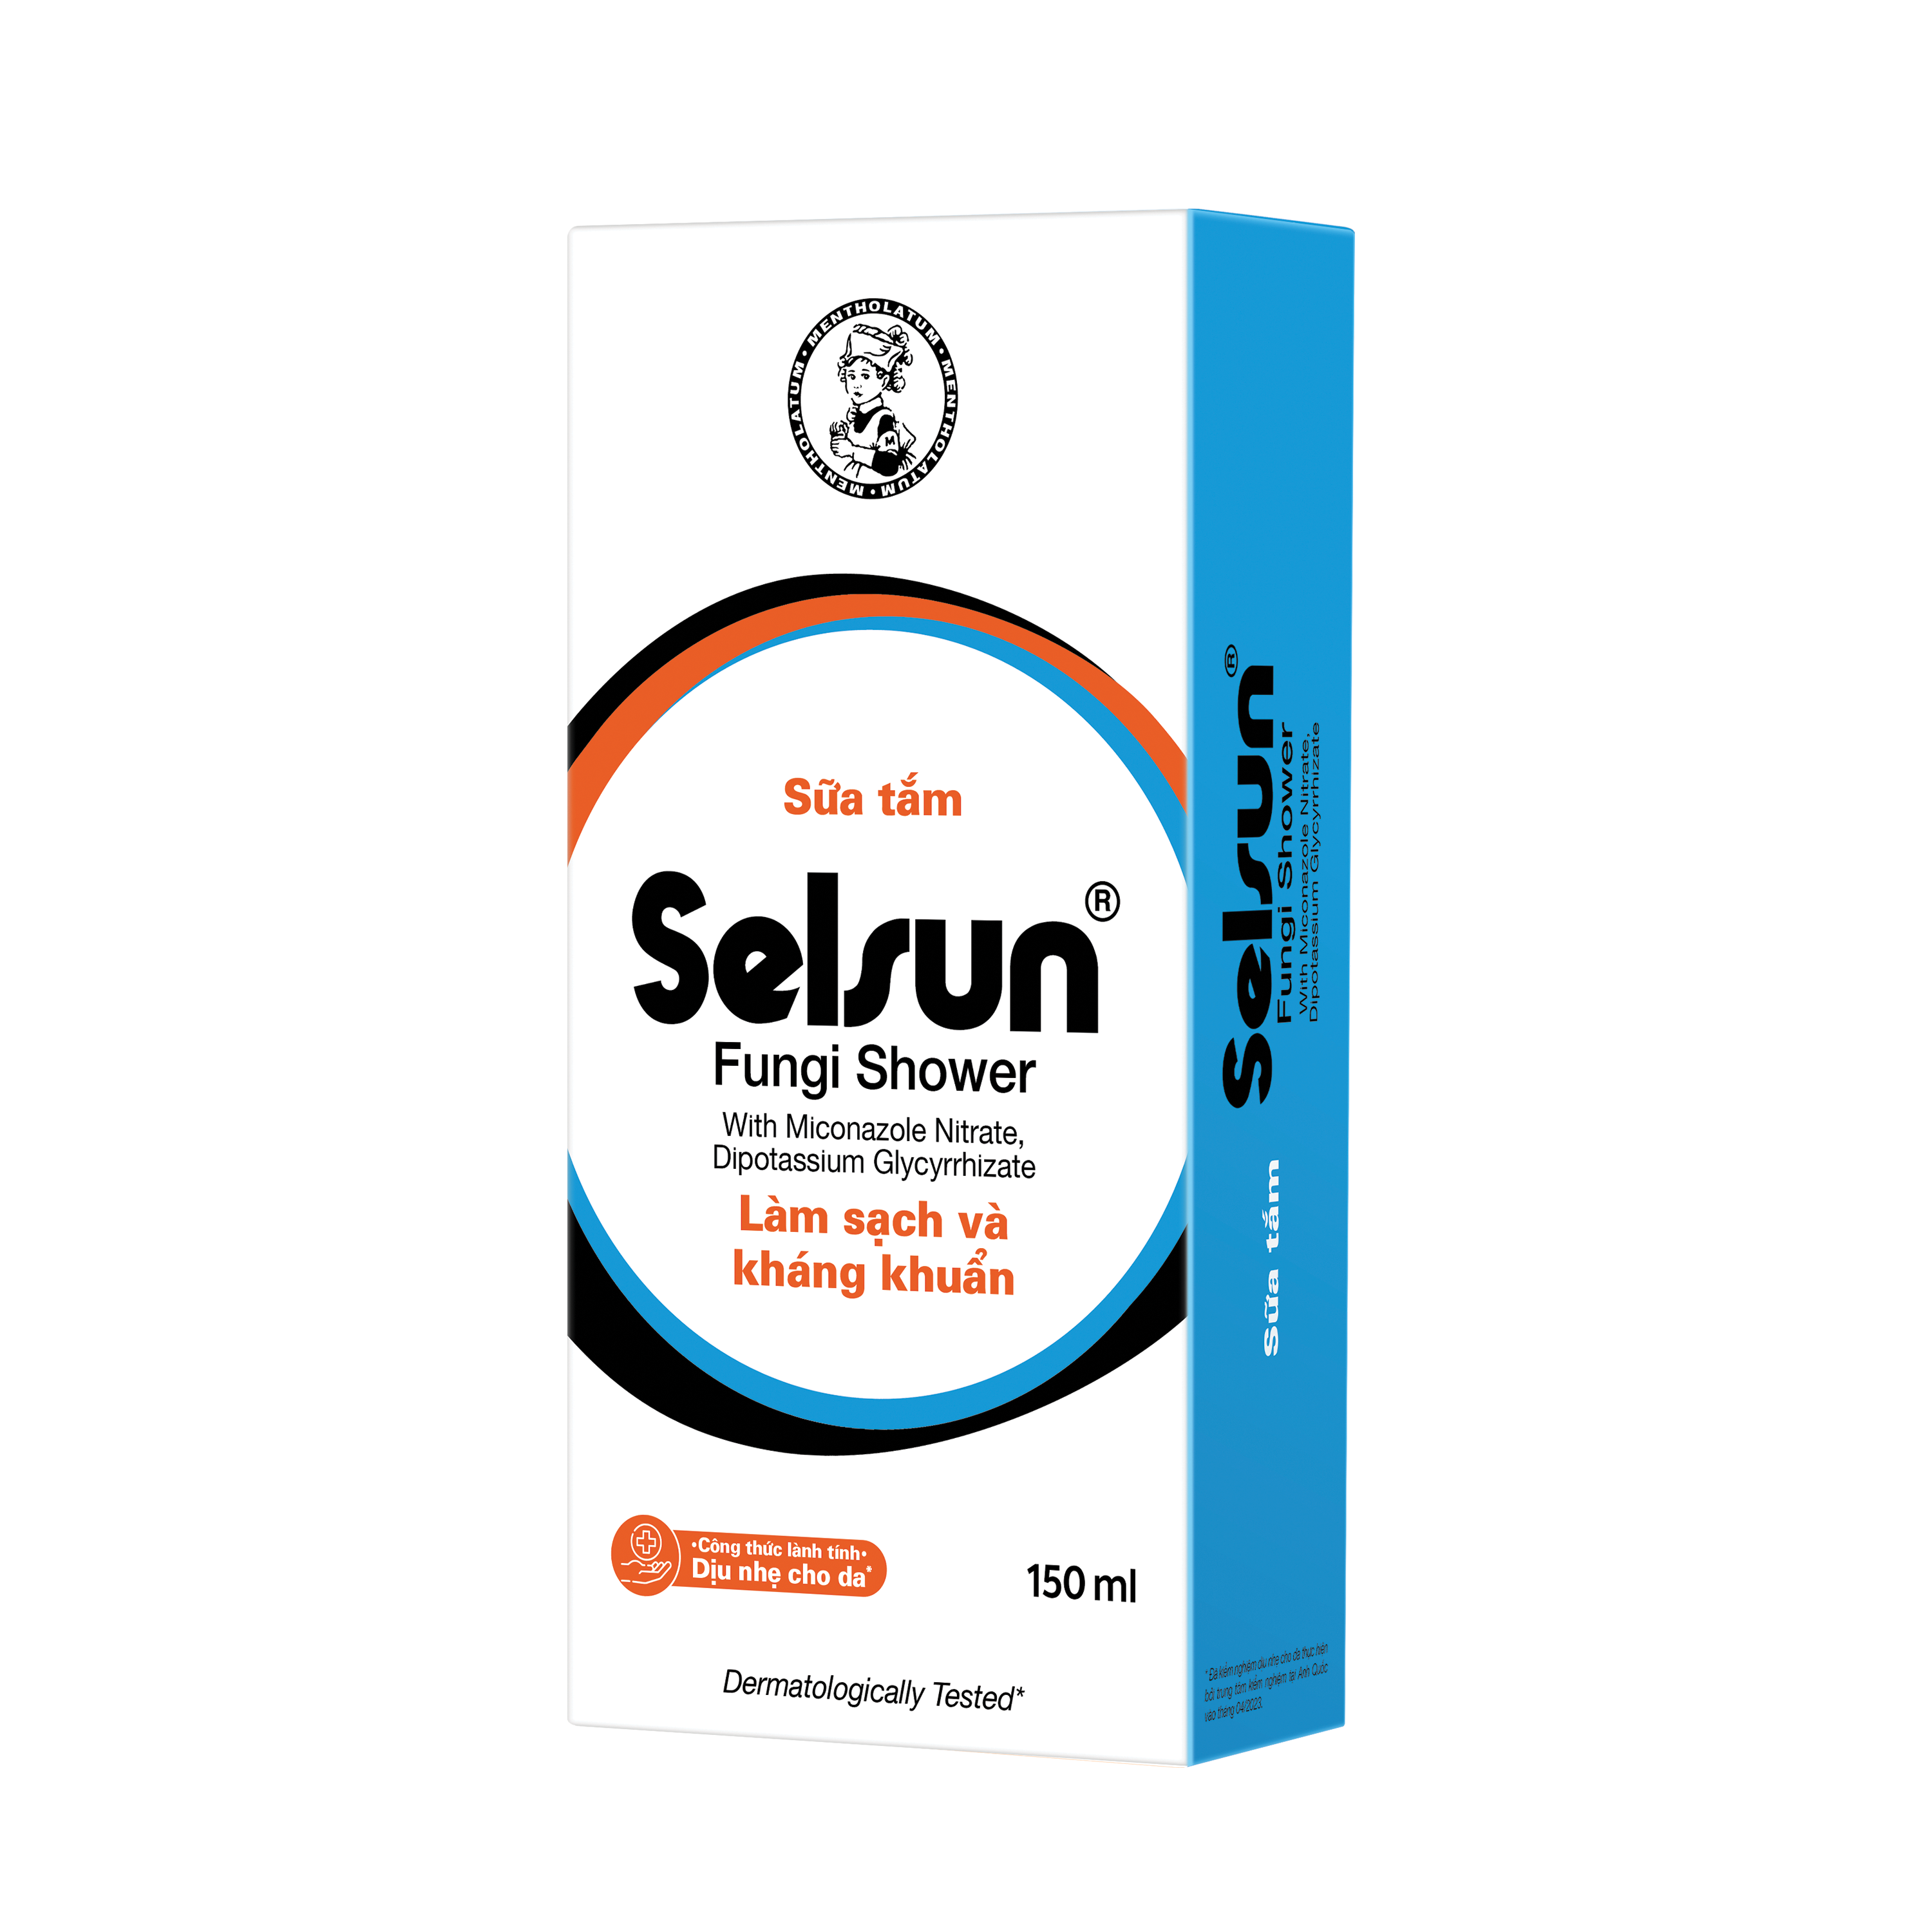 Sữa Tắm Selsun Fungi Shower 150 ml (Tặng kèm 01 Hộp 6 gói dầu gội chống gàu Selsun 5ml)